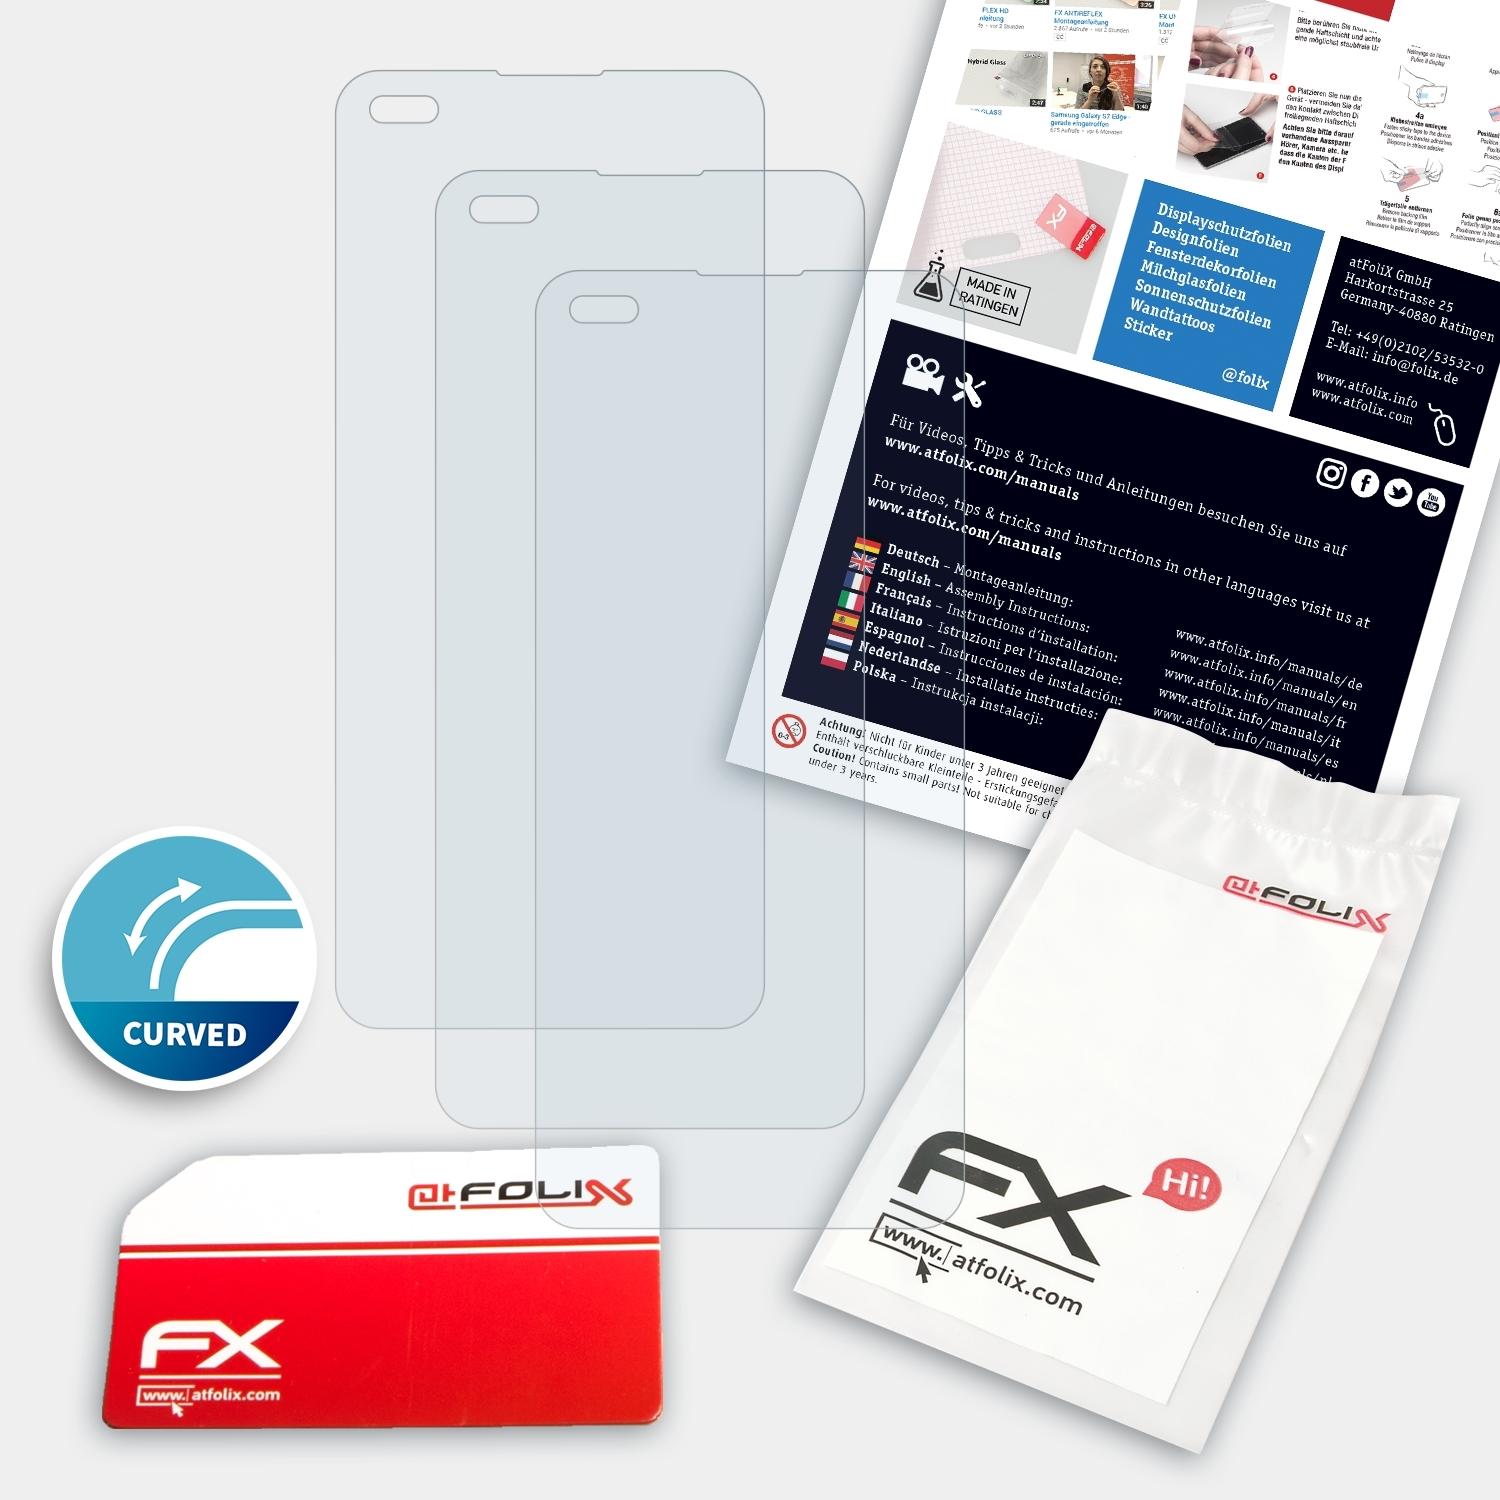 ATFOLIX 3x FX-ActiFleX Oppo Displayschutz(für F17 Pro)